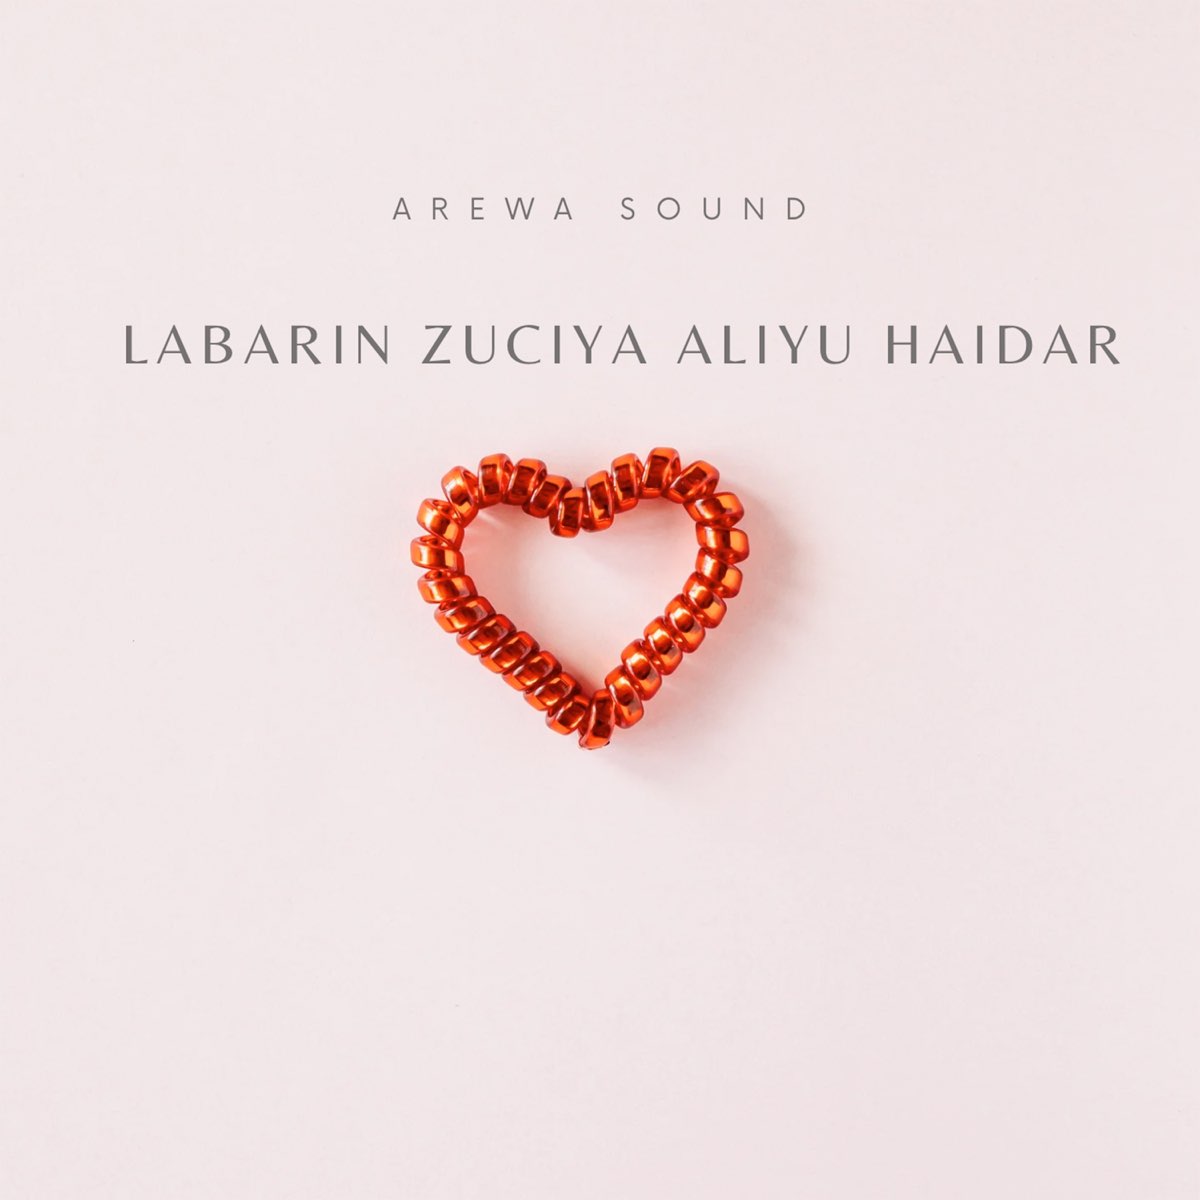 Labarin Zuciya Aliyu Haidar - Single de Arewa Sound en Apple Music